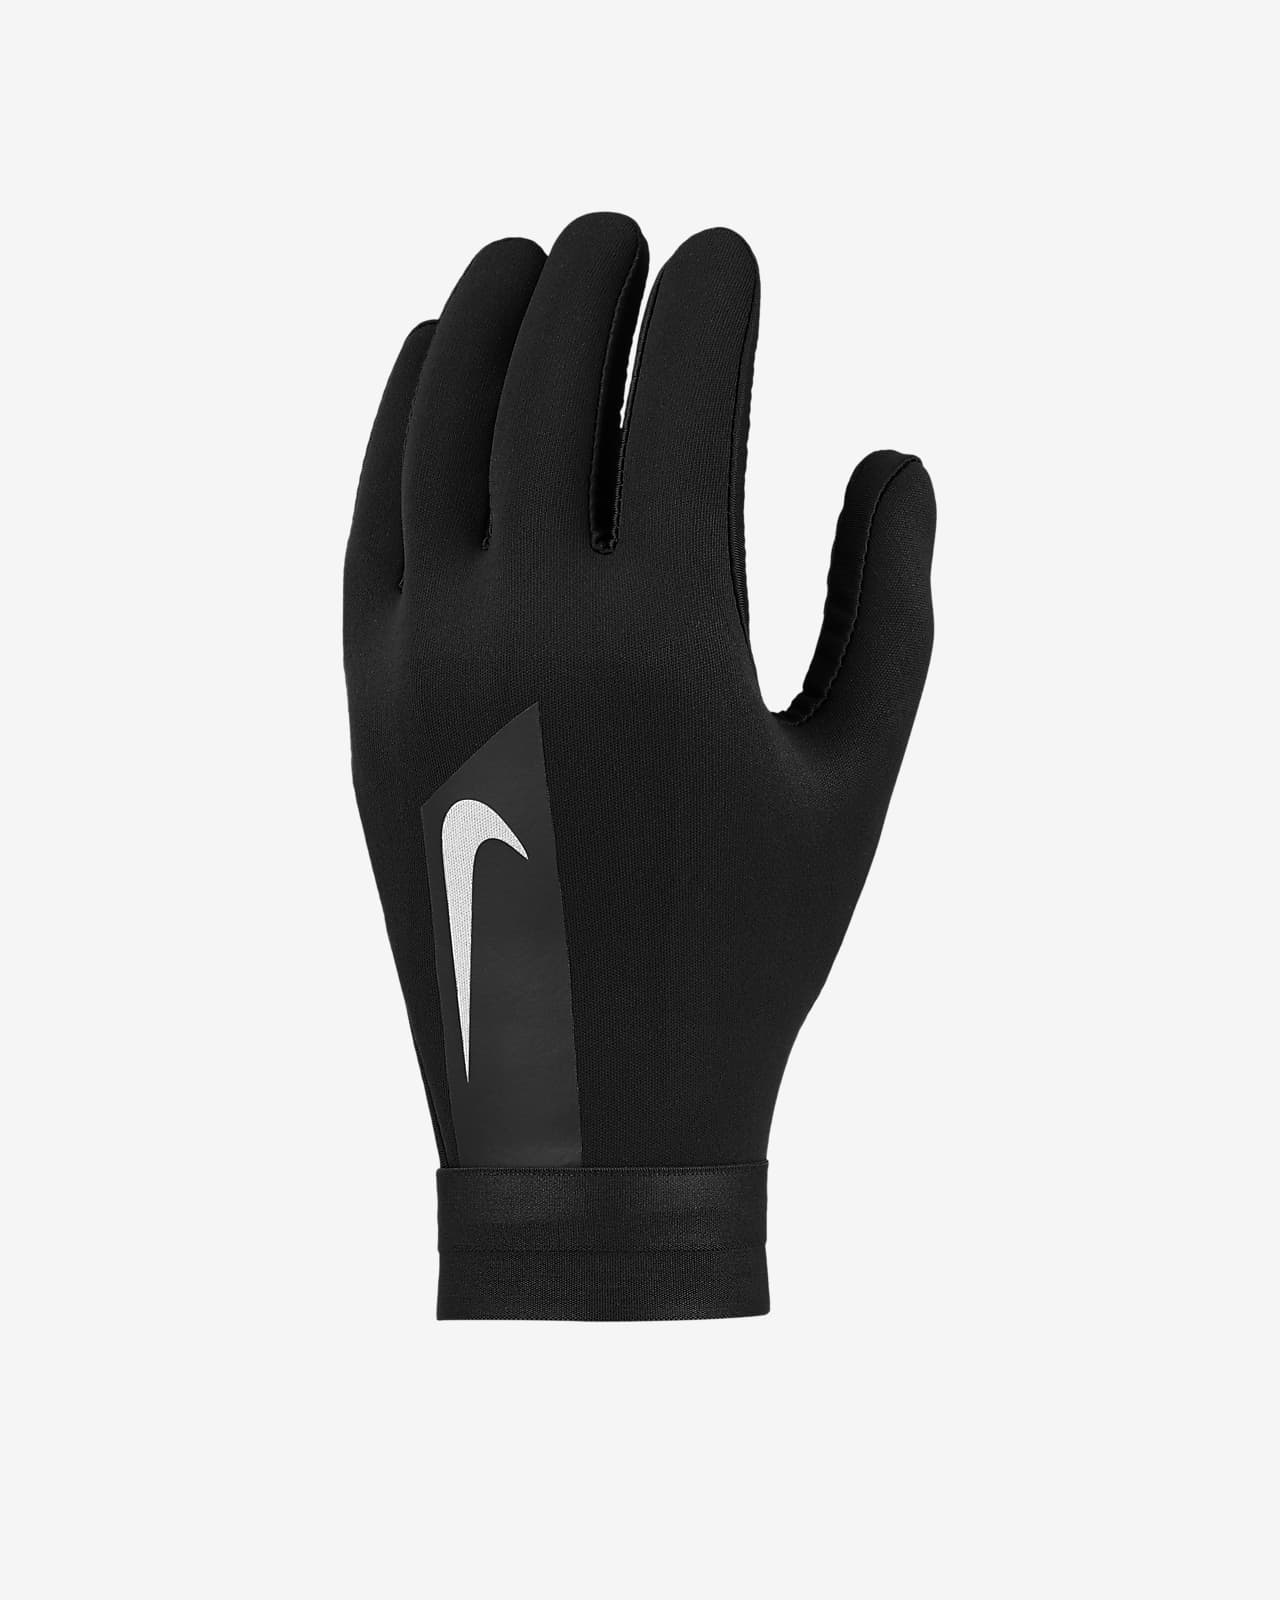 nike football gloves 2019